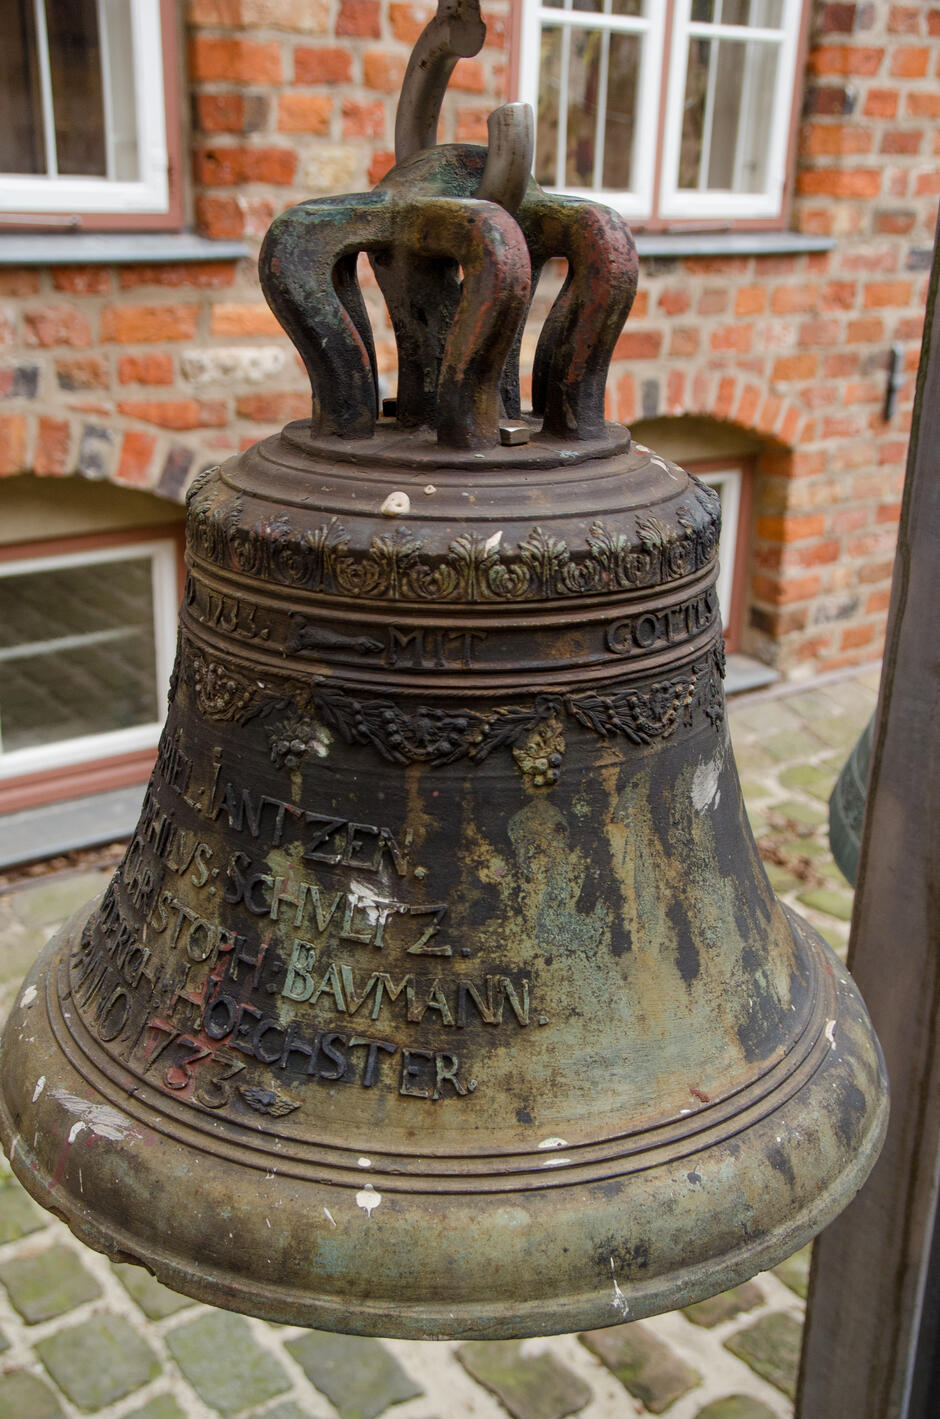 To zdjęcie przedstawia stary dzwon z brązu z różnymi inskrypcjami, umieszczony na zewnątrz obok ceglanej ściany. Na górze dzwonu znajduje się dekoracyjny pas z liściastym wzorem, a poniżej niego inskrypcje wypukłymi literami. Można wyróżnić słowa MIT GOTT , a także kilka imion i nazwisk, takich jak  CHRISTOPH BAUMANN , oraz datę  1750 . Dzwon ma tradycyjny kształt, z widocznym uchwytami na górze. Powierzchnia dzwonu wykazuje oznaki korozji i patynowania, z zielonkawymi przebarwieniami, co sugeruje jego starość i długotrwałe wystawienie na działanie czynników atmosferycznych